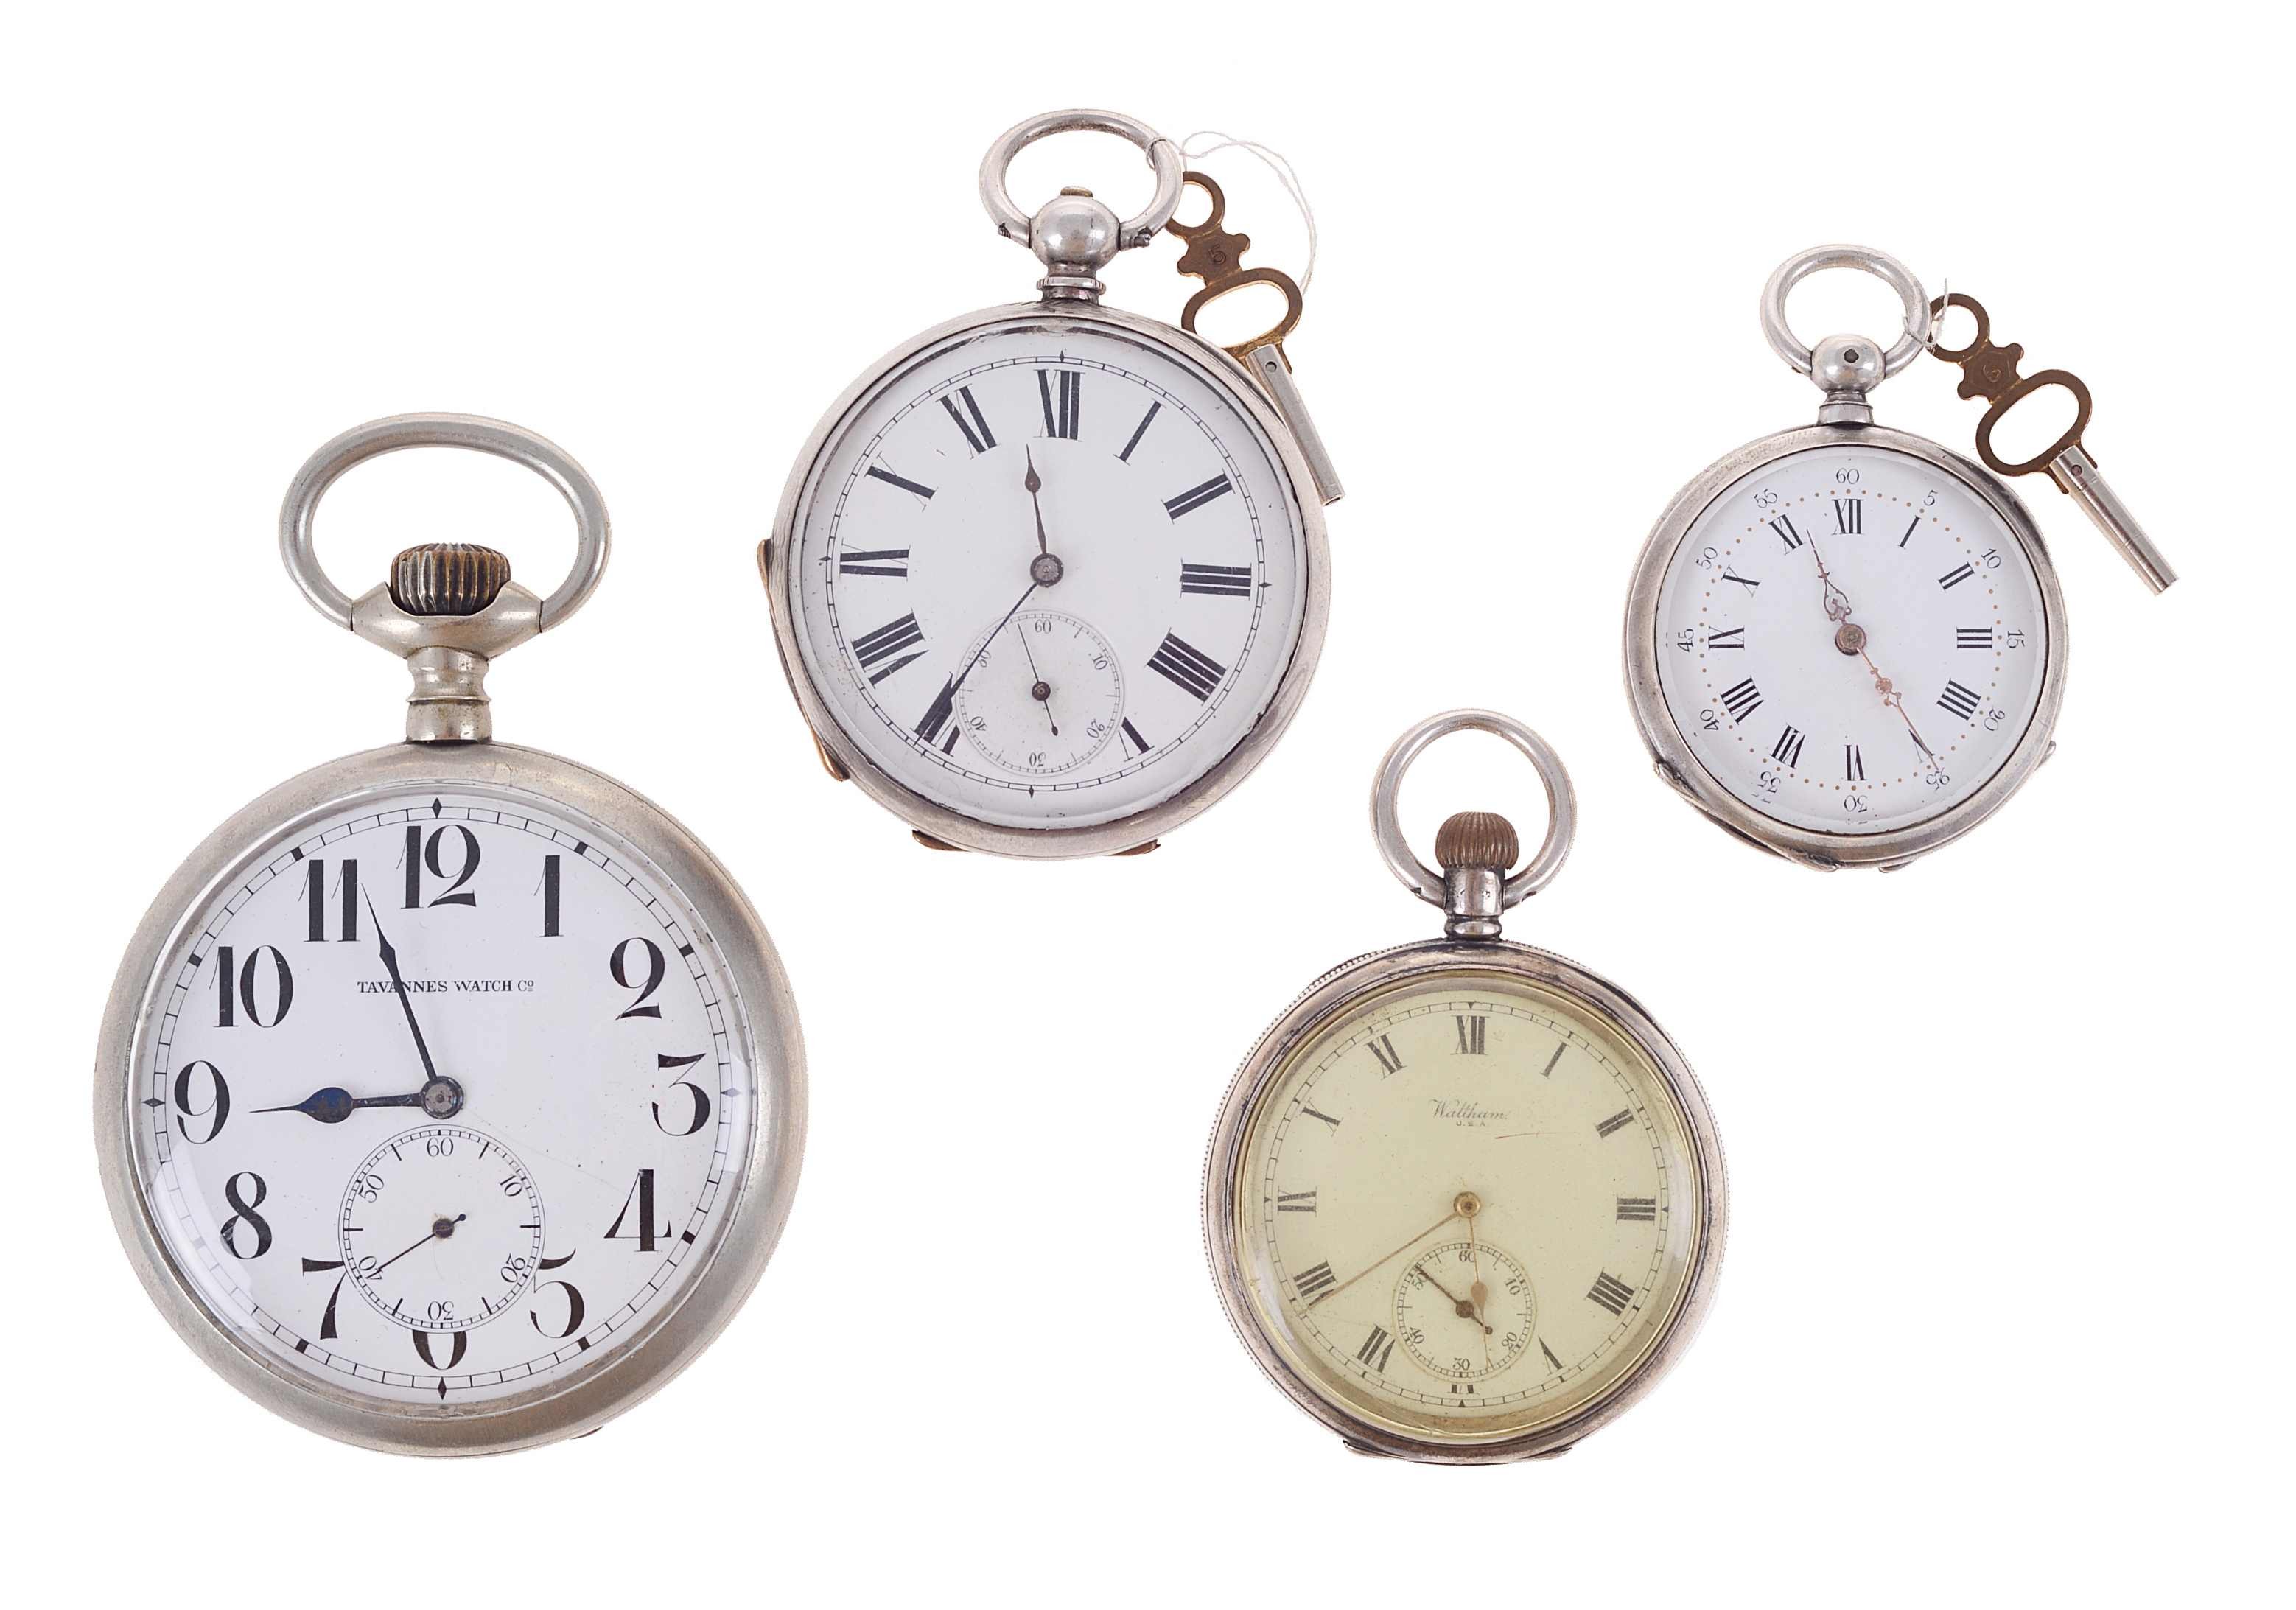 Quatro relógios de bolso (4)